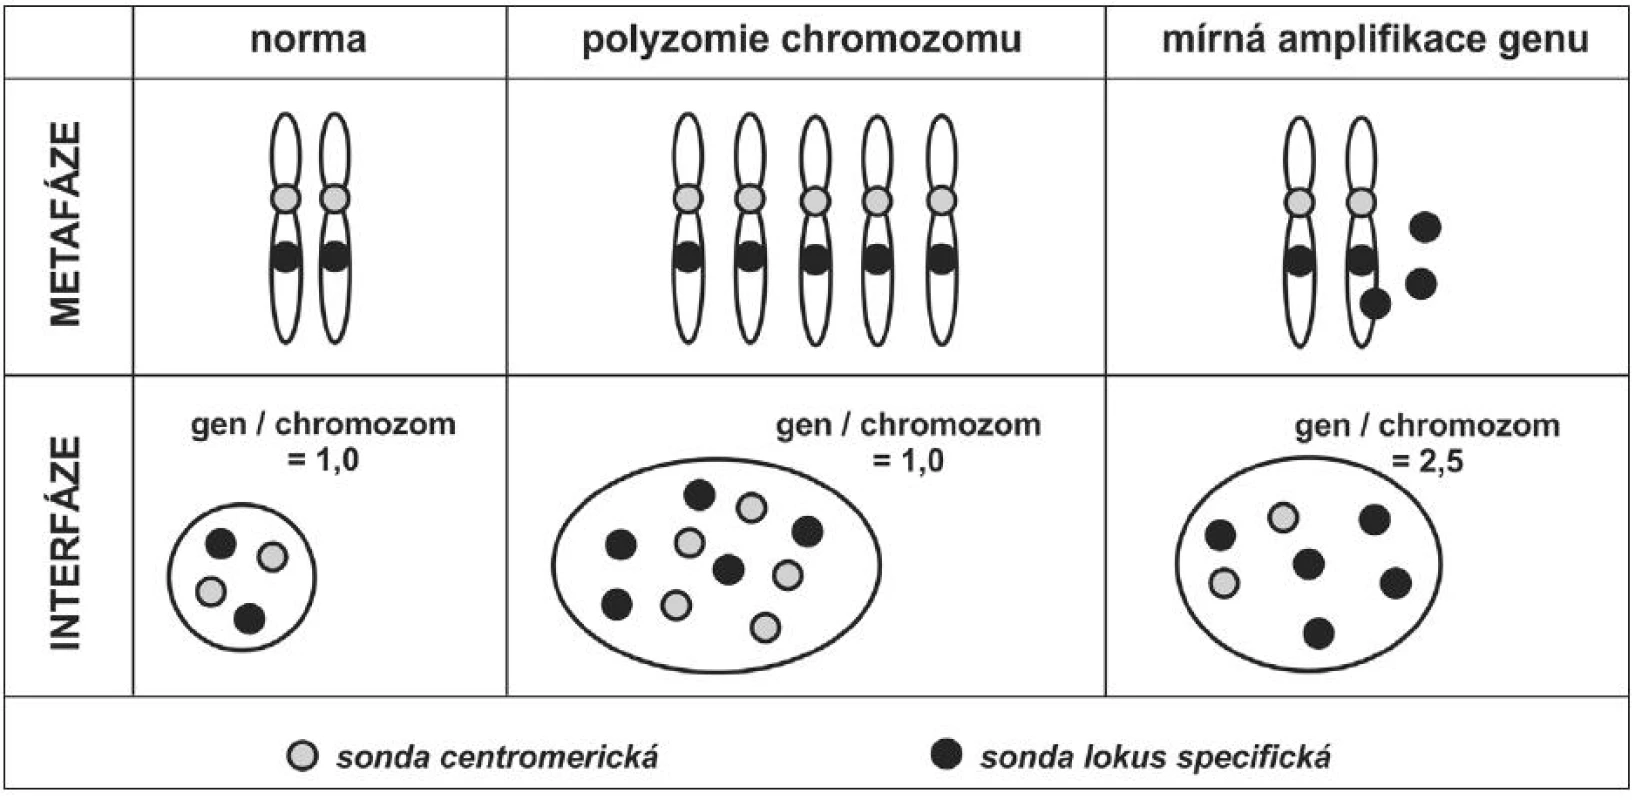 Odlišení polyzomie chromozomu od mírného stupně amplifikace genu na tomto chromozomu lokalizovaném. Kombinace sondy centromerické (značené například fluorochromem poskytujícím zelenou fluorescenci) a lokus specifické (značené například fluorochromem poskytujícím červenou fluorescenci) umožňuje odlišit zvýšený počet chromozomu od zvýšeného počtu kopií genu, lokalizovaném na tomto chromozomu. Odlišení by nebylo možné, pokud by ve směsi sond nebyla přítomna sonda centromerická. Pro dokreslení významu odlišení změn je uveden výsledný poměr počtu signálů genu ku počtu signálů pro centromeru chromozomu v jádře buňky.